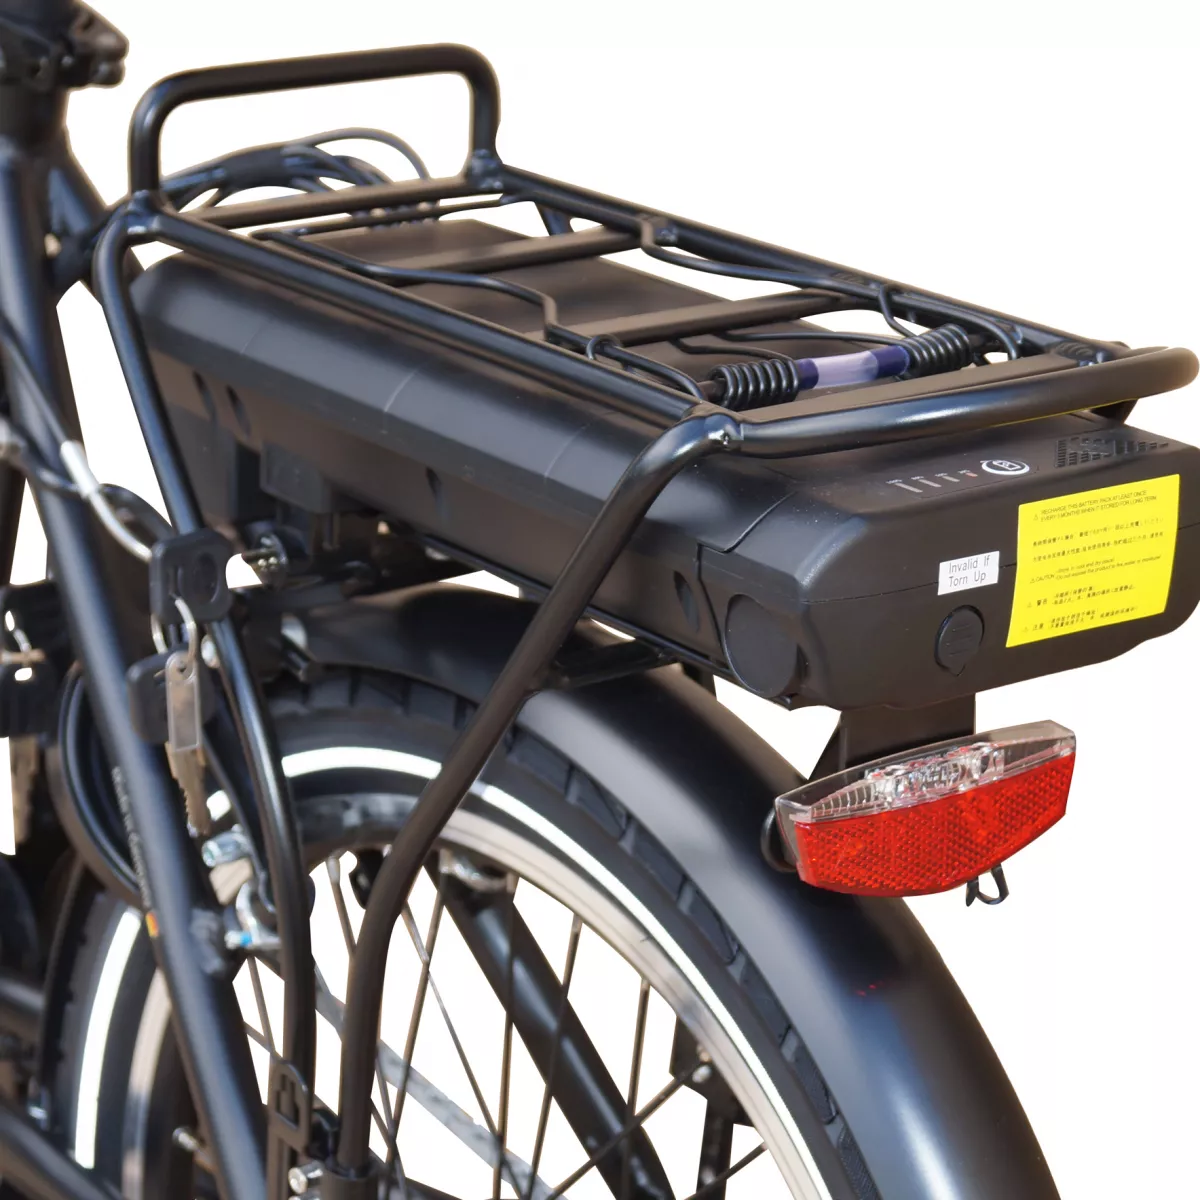 Bicicleta electrica pliabila compact E-BIKE SAXONETTE, roata 20 inch, cadru aluminiu, transmisie SHIMANO 7 viteze, culoare negru